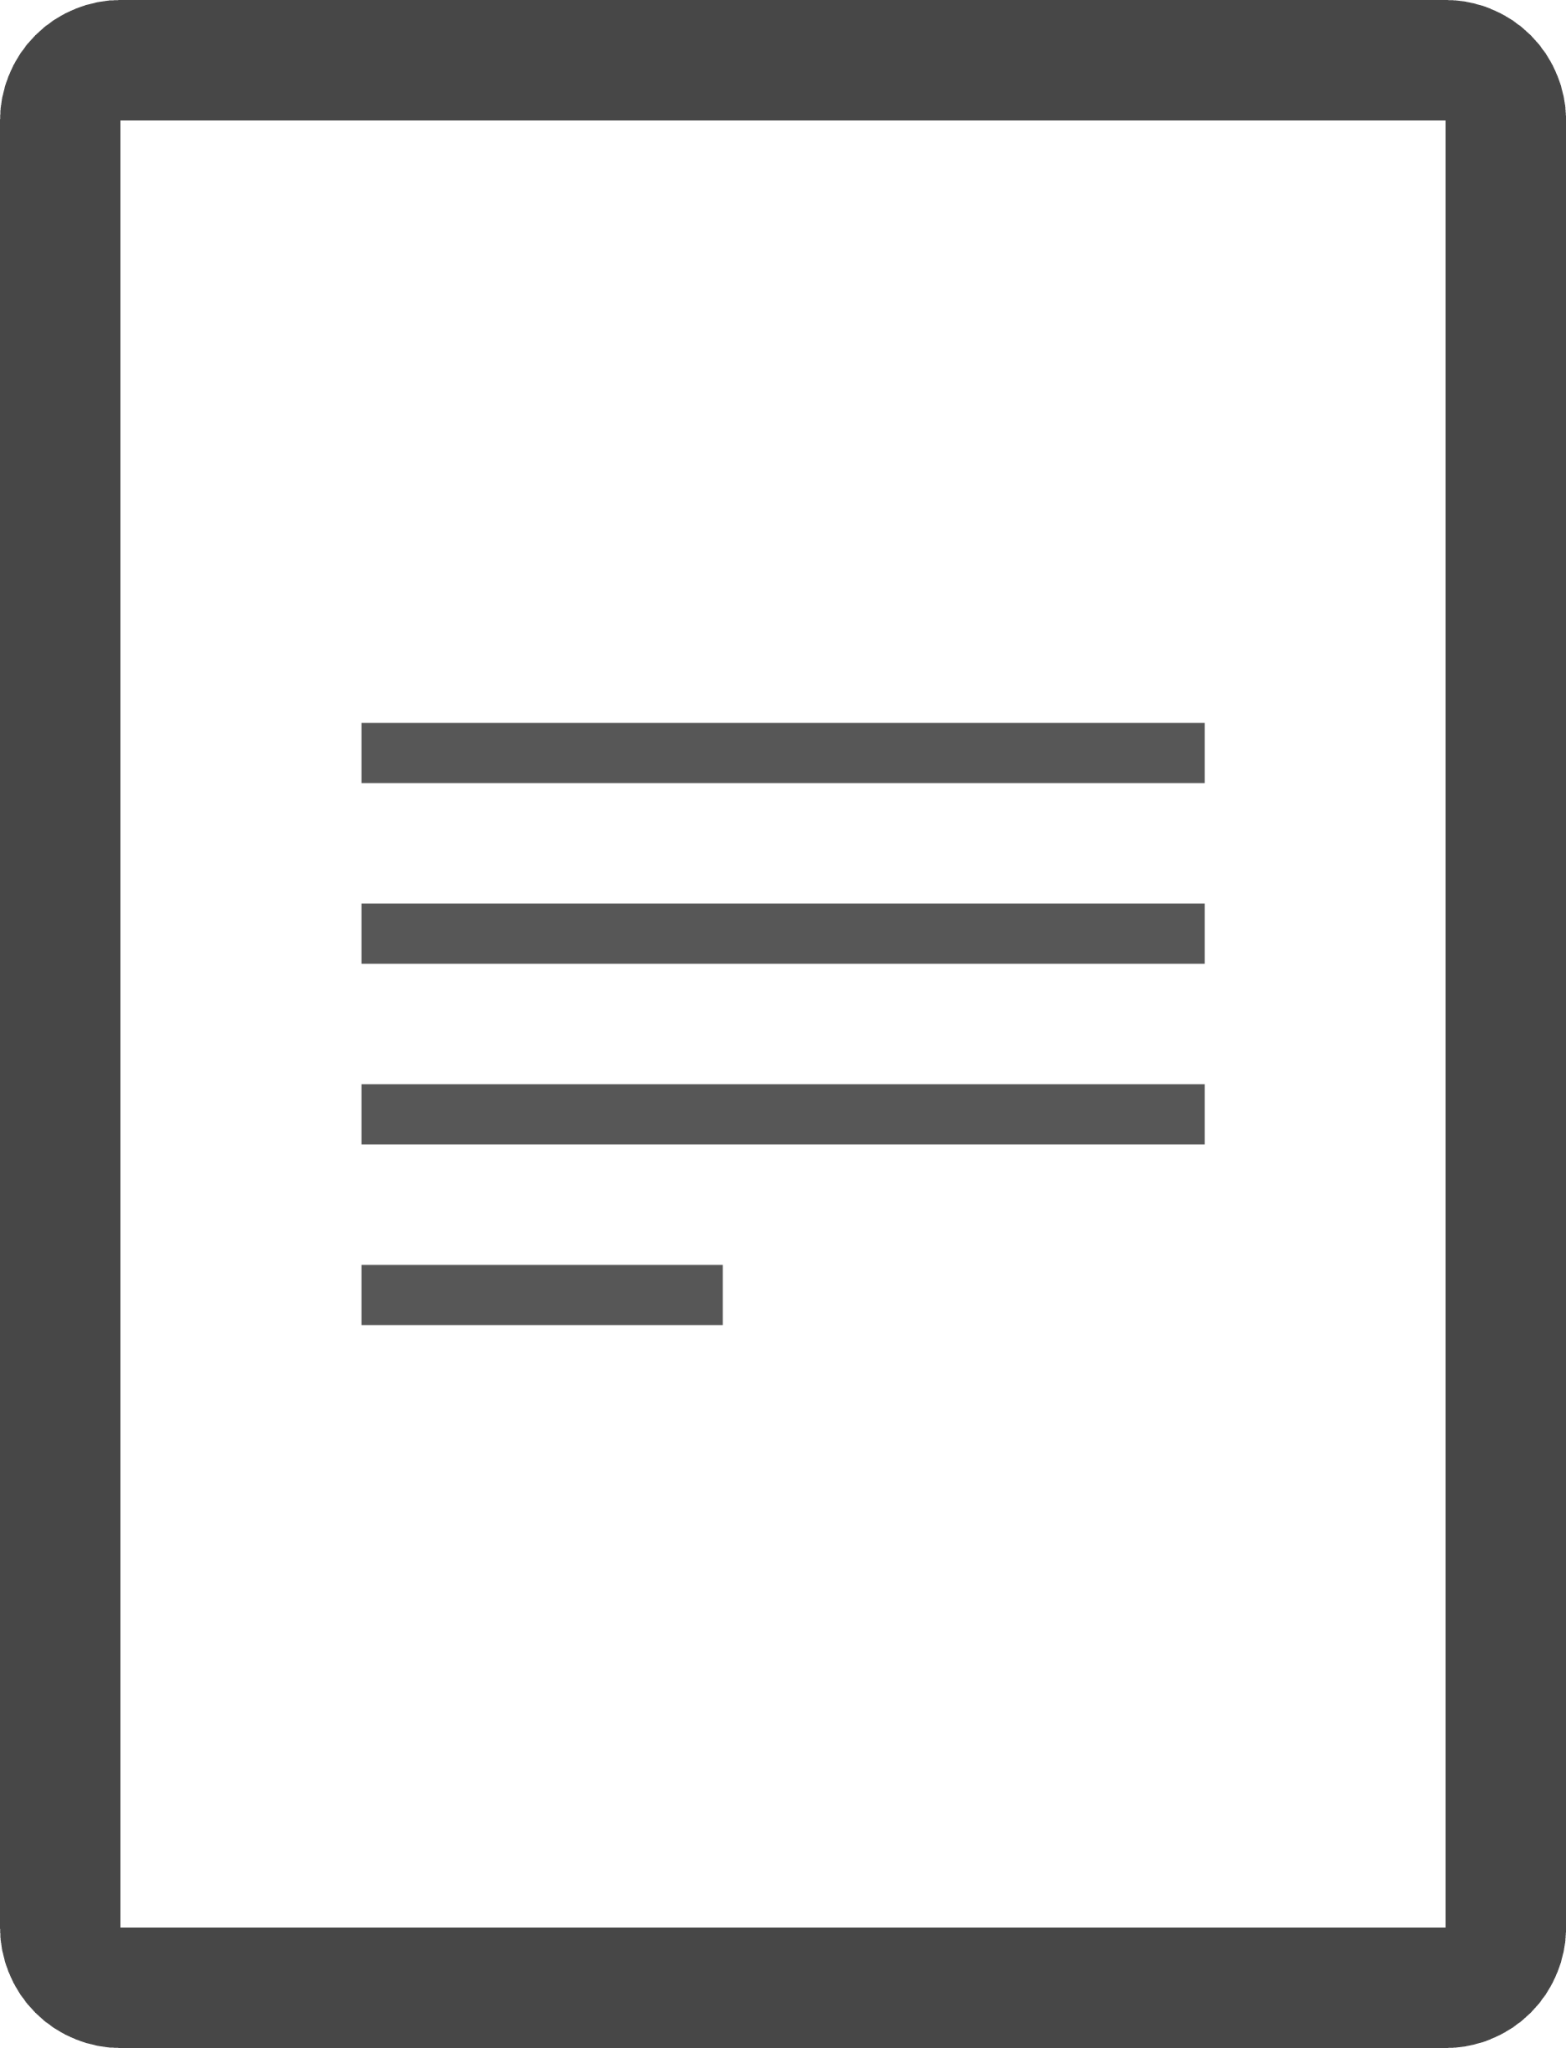 Sheet text icon